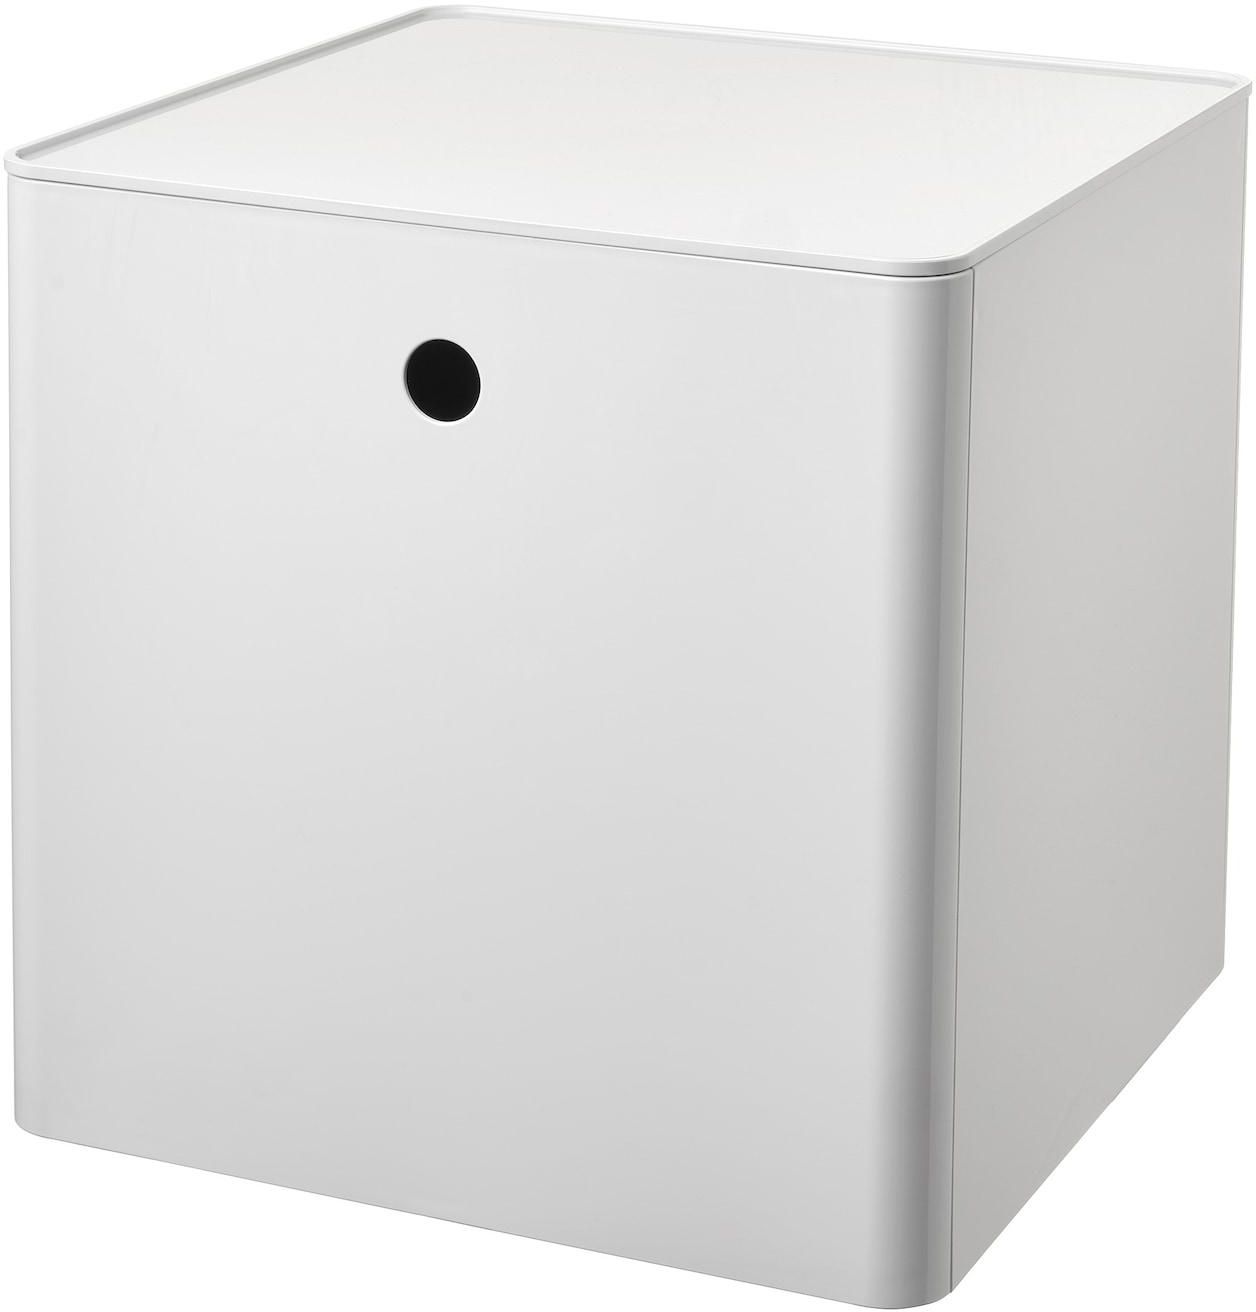 KUGGIS صندوق تخزين مع غطاء - أبيض ‎32x32x32 سم‏